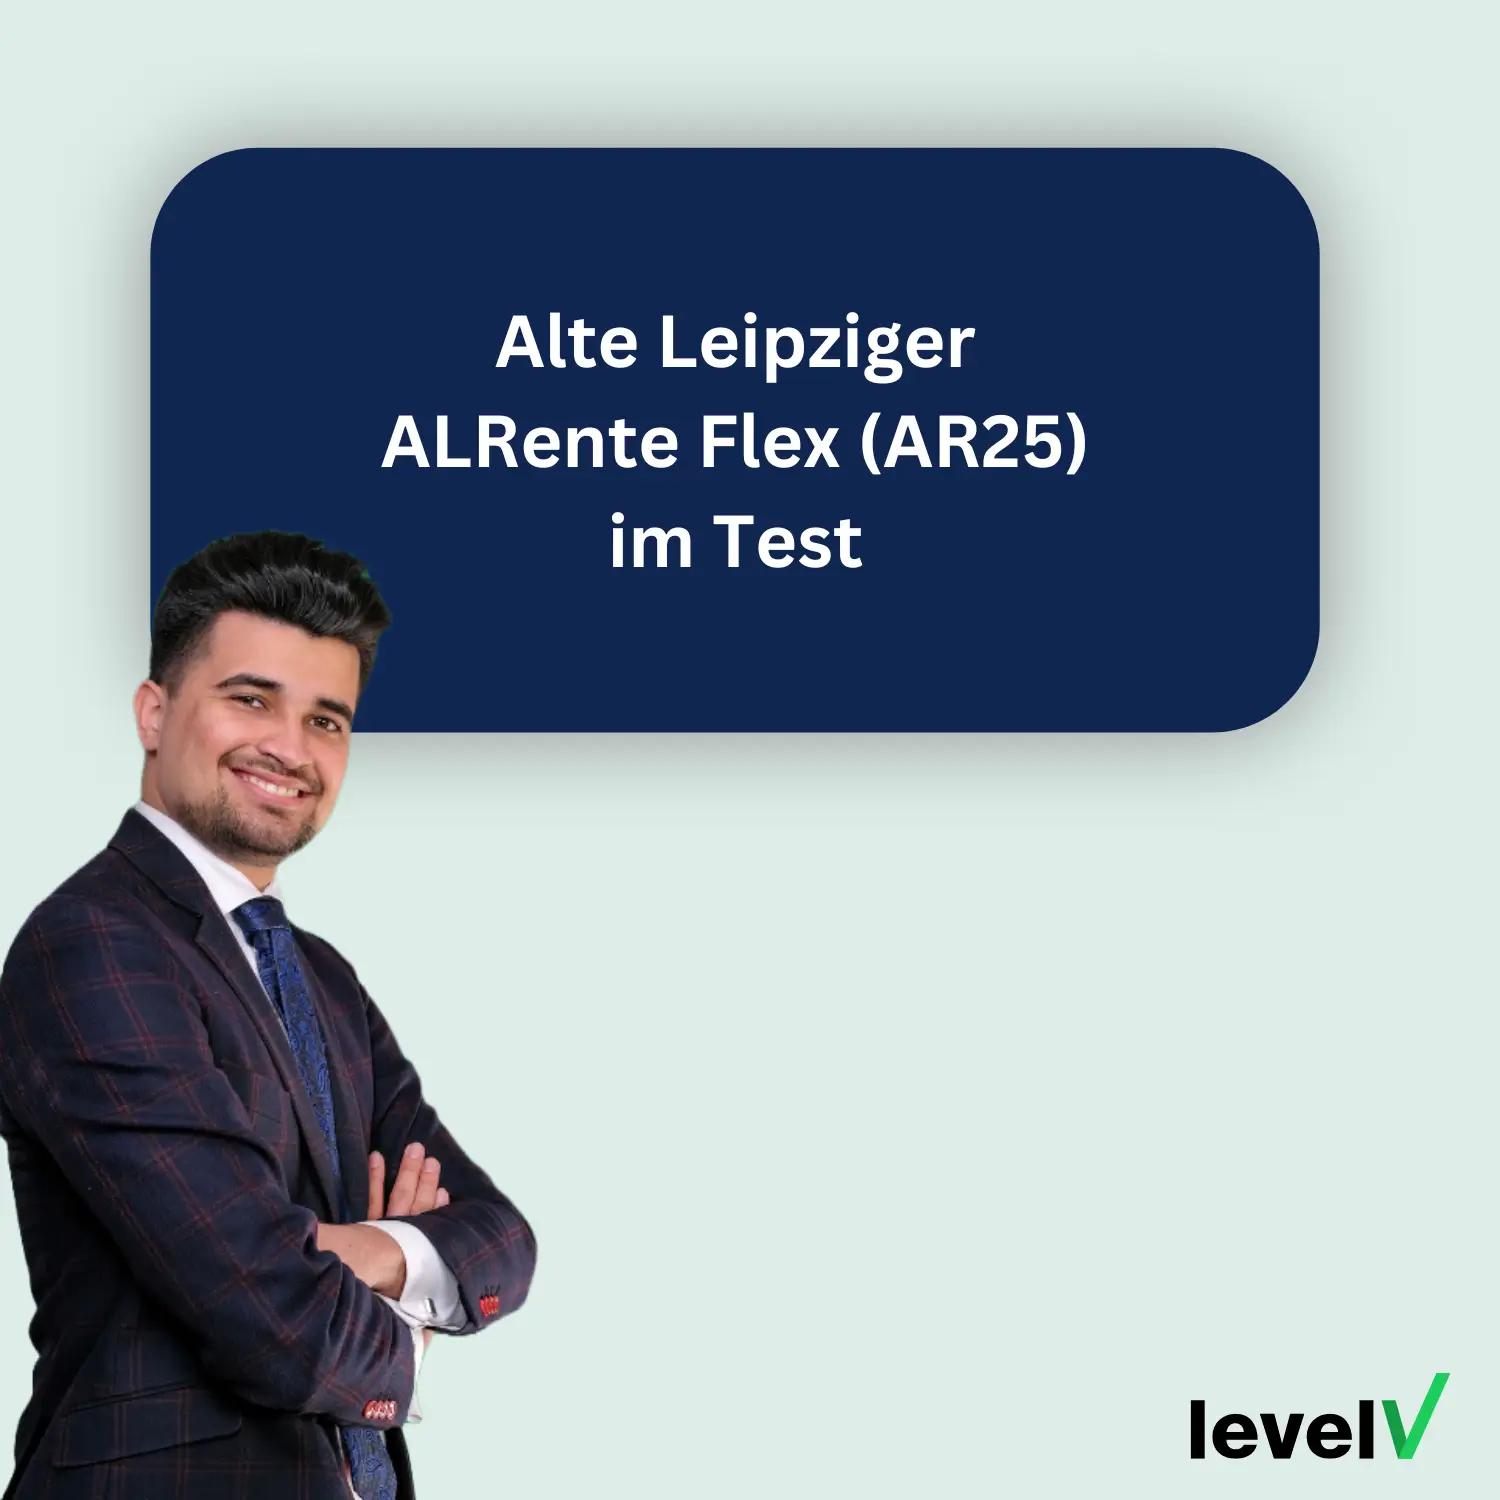 Alte Leipziger ALRente Flex (AR25) im Test